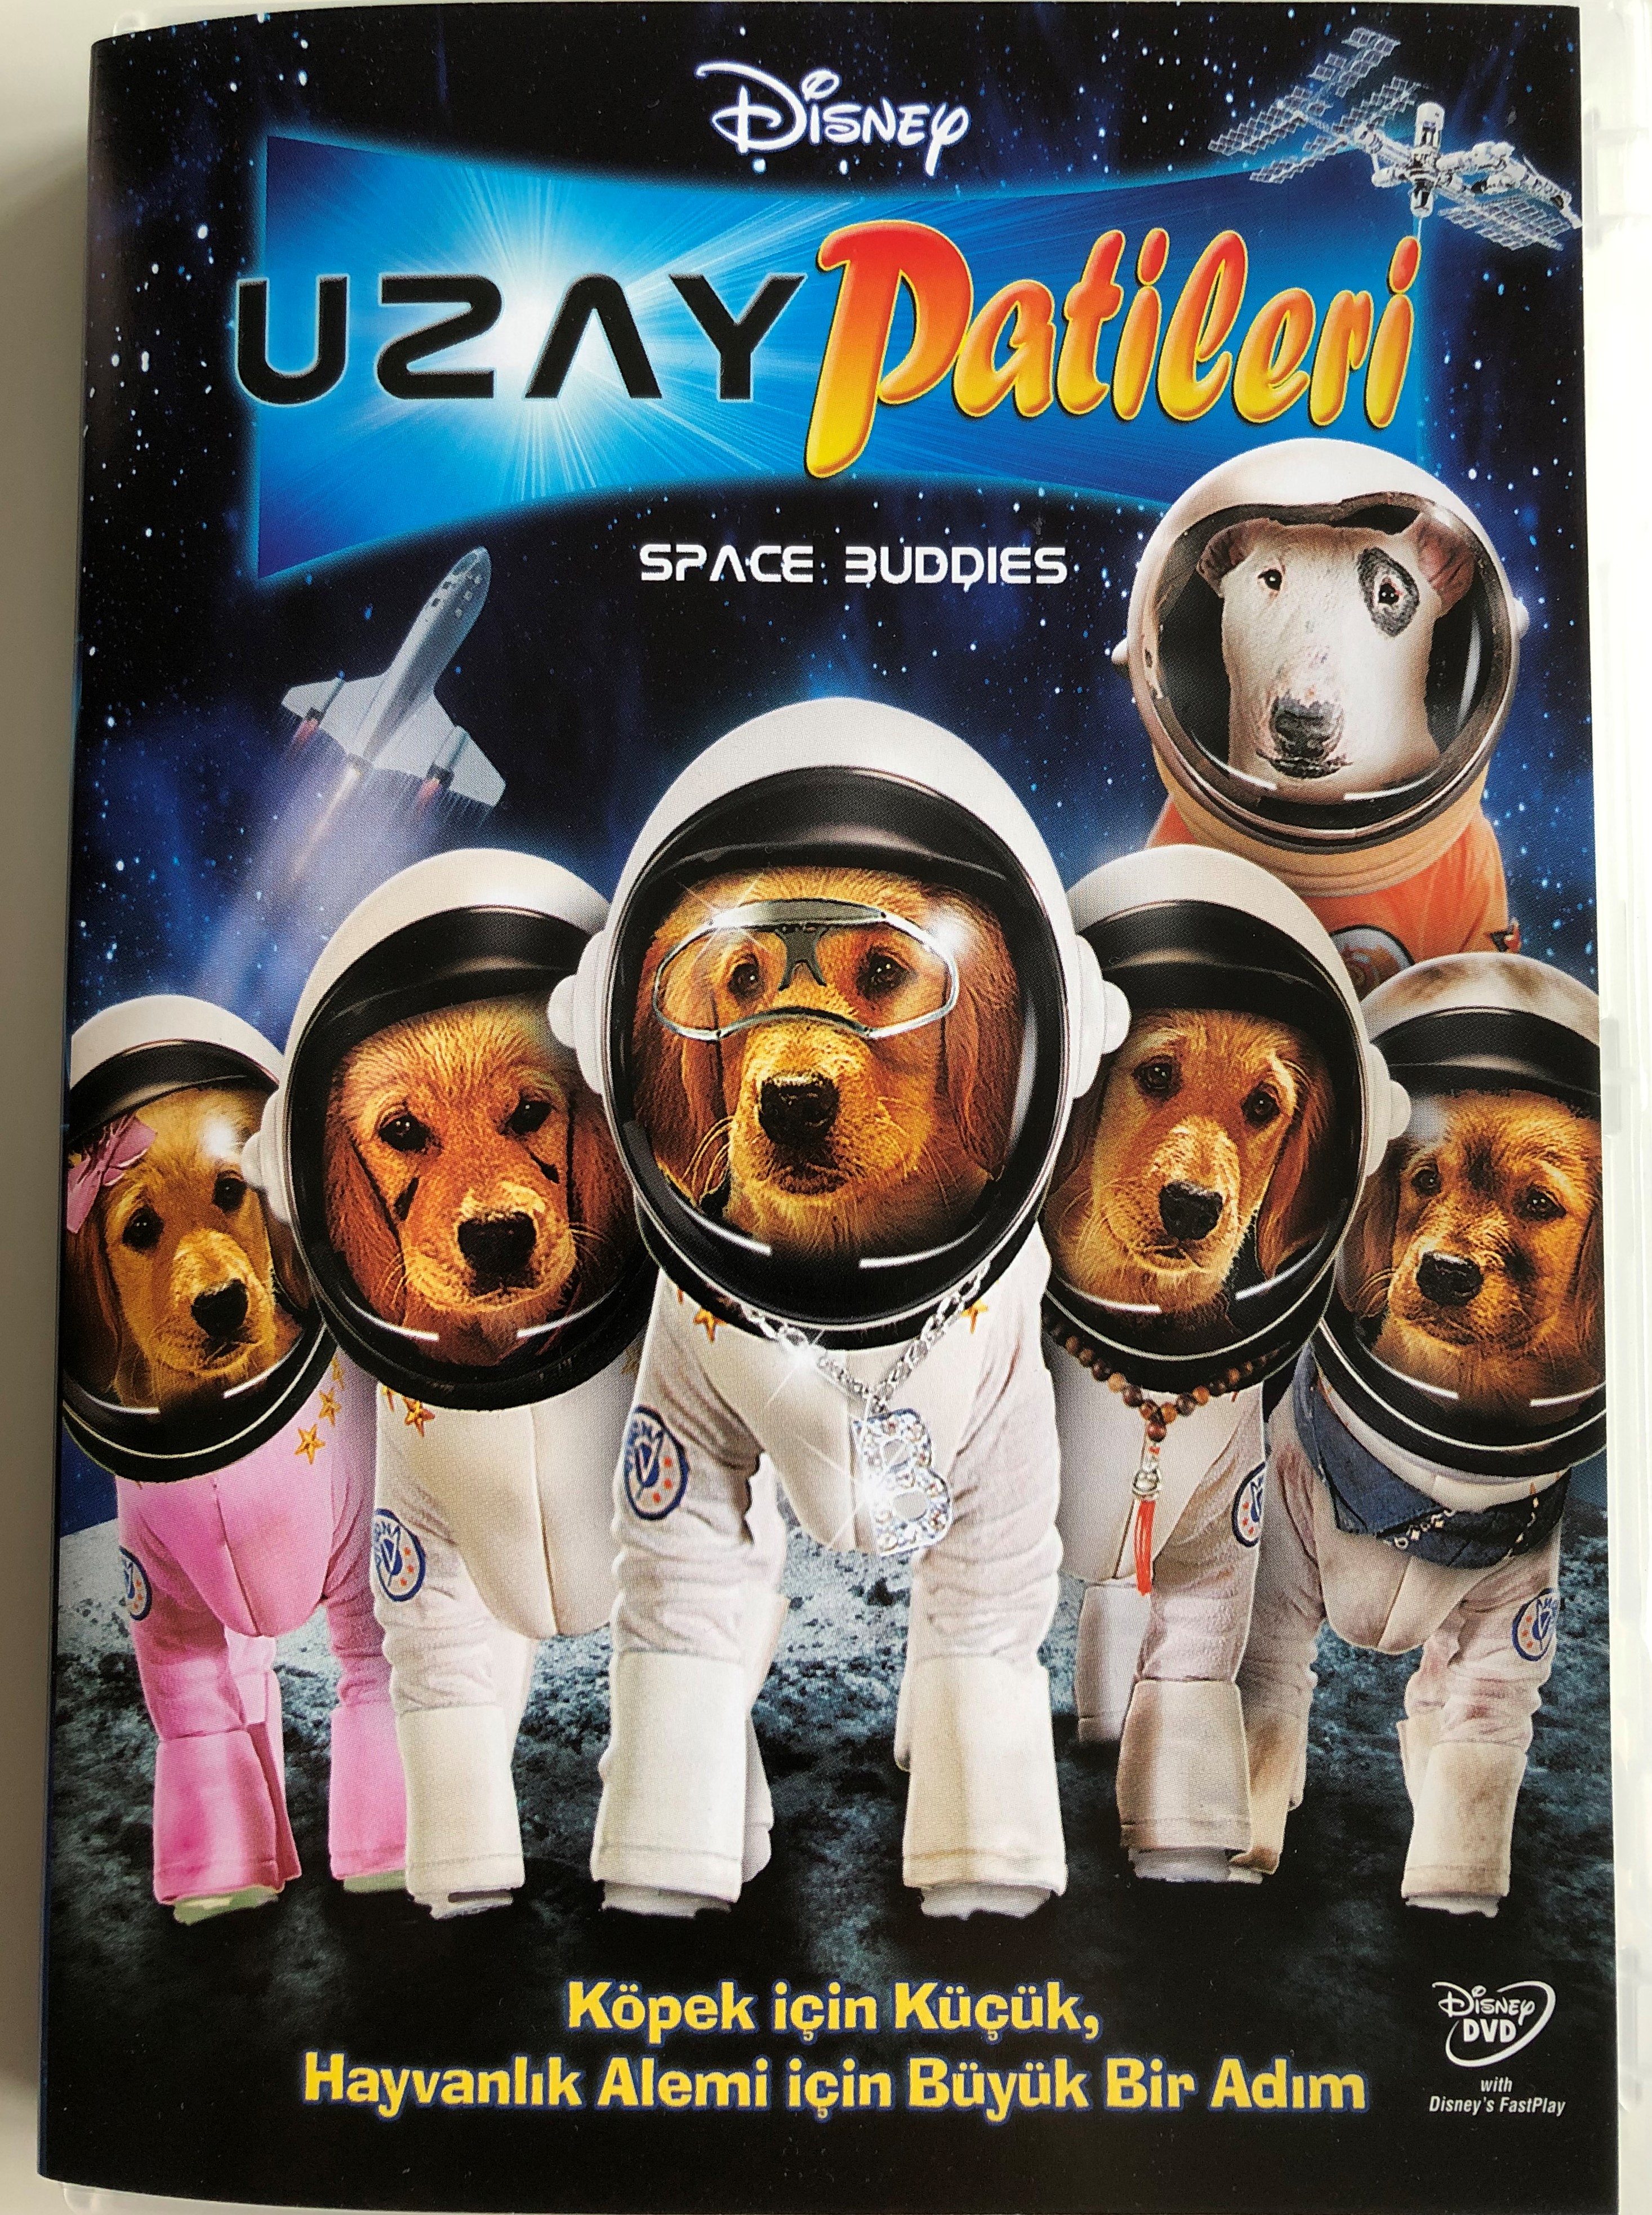 space-buddies-dvd-2009-uzay-patileri-directed-by-robert-vince-starring-jason-earles-diedrich-bader-lochlyn-munro-bill-fagerbakke-kevin-weisman-1-.jpg